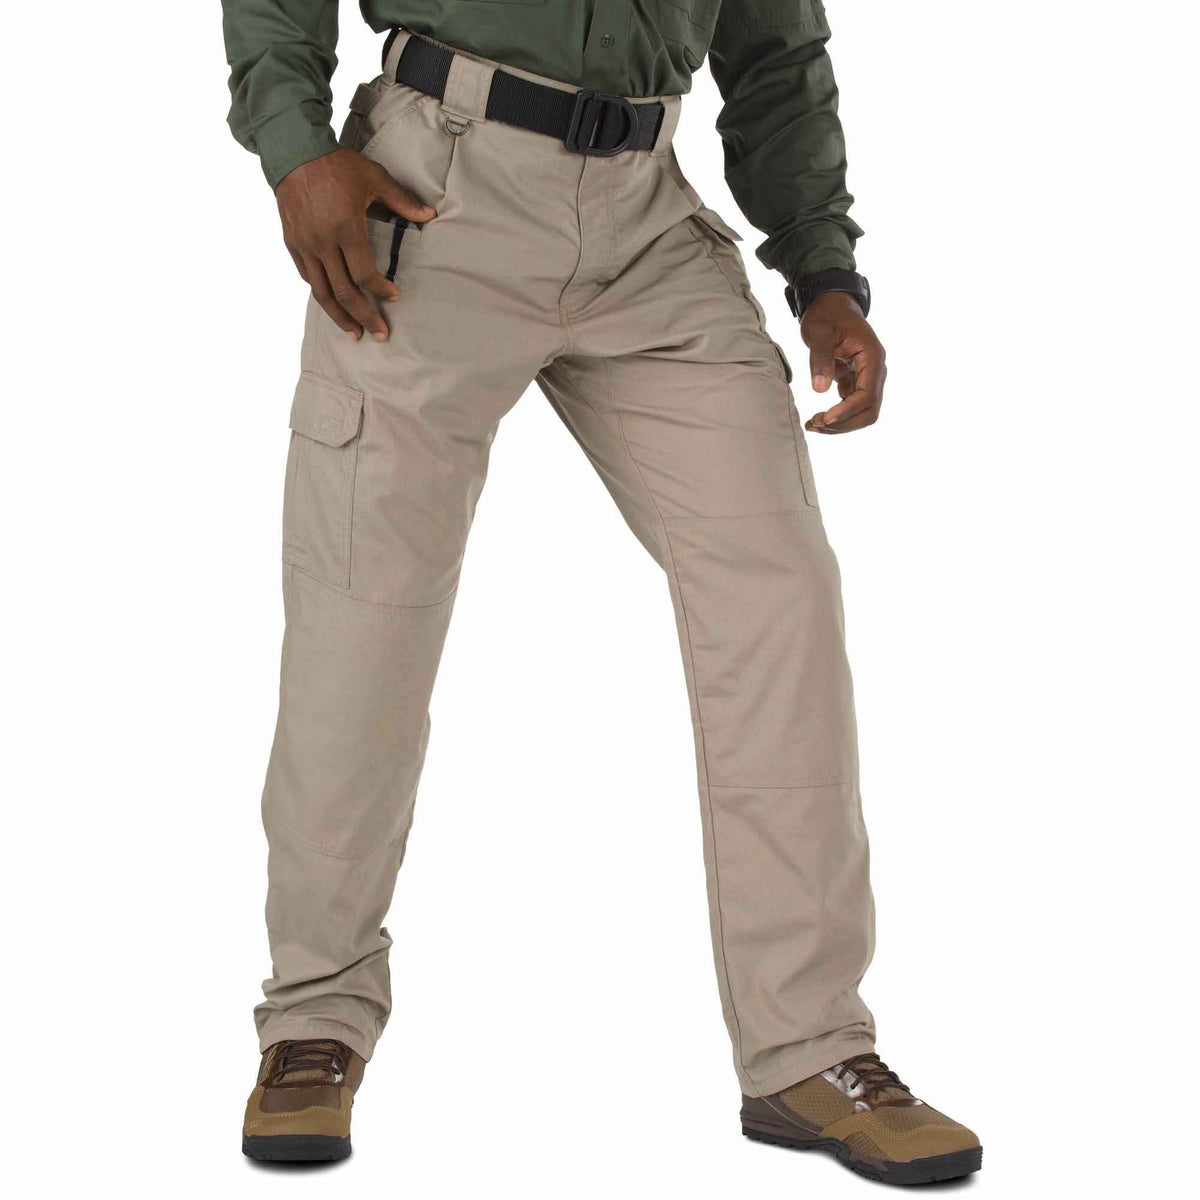 5.11 Tactical Taclite Pro Pants - Stone Pants 5.11 Tactical 28 30 Tactical Gear Supplier Tactical Distributors Australia